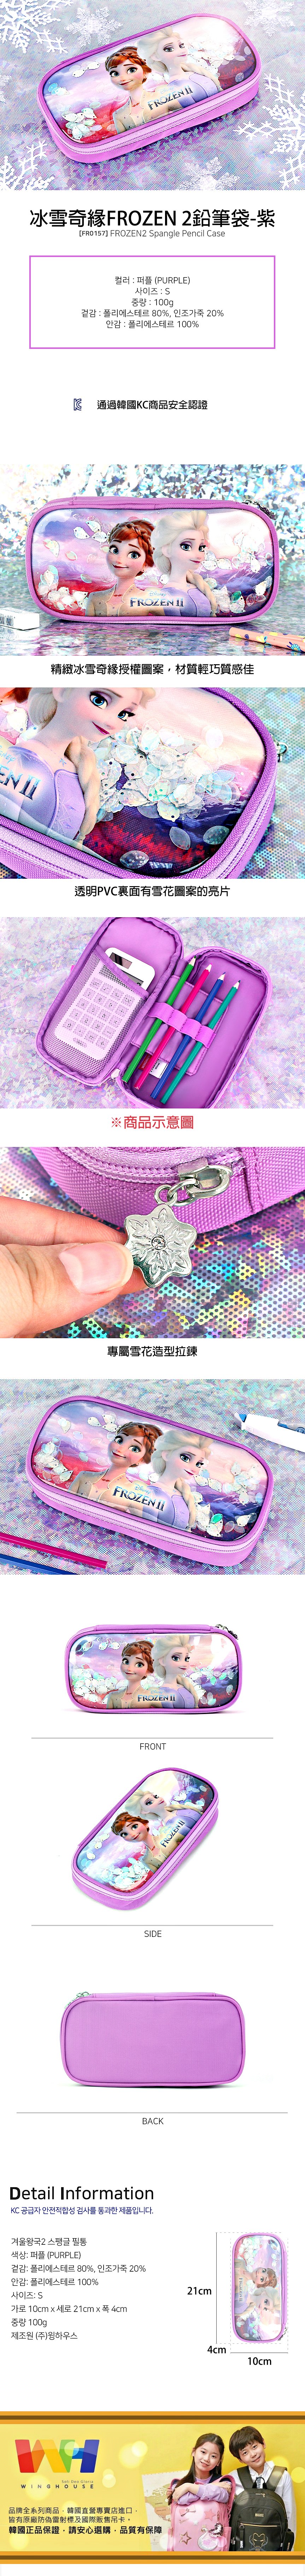 韓國winghouse冰雪奇緣FROZEN 2鉛筆袋【FR0157】紫